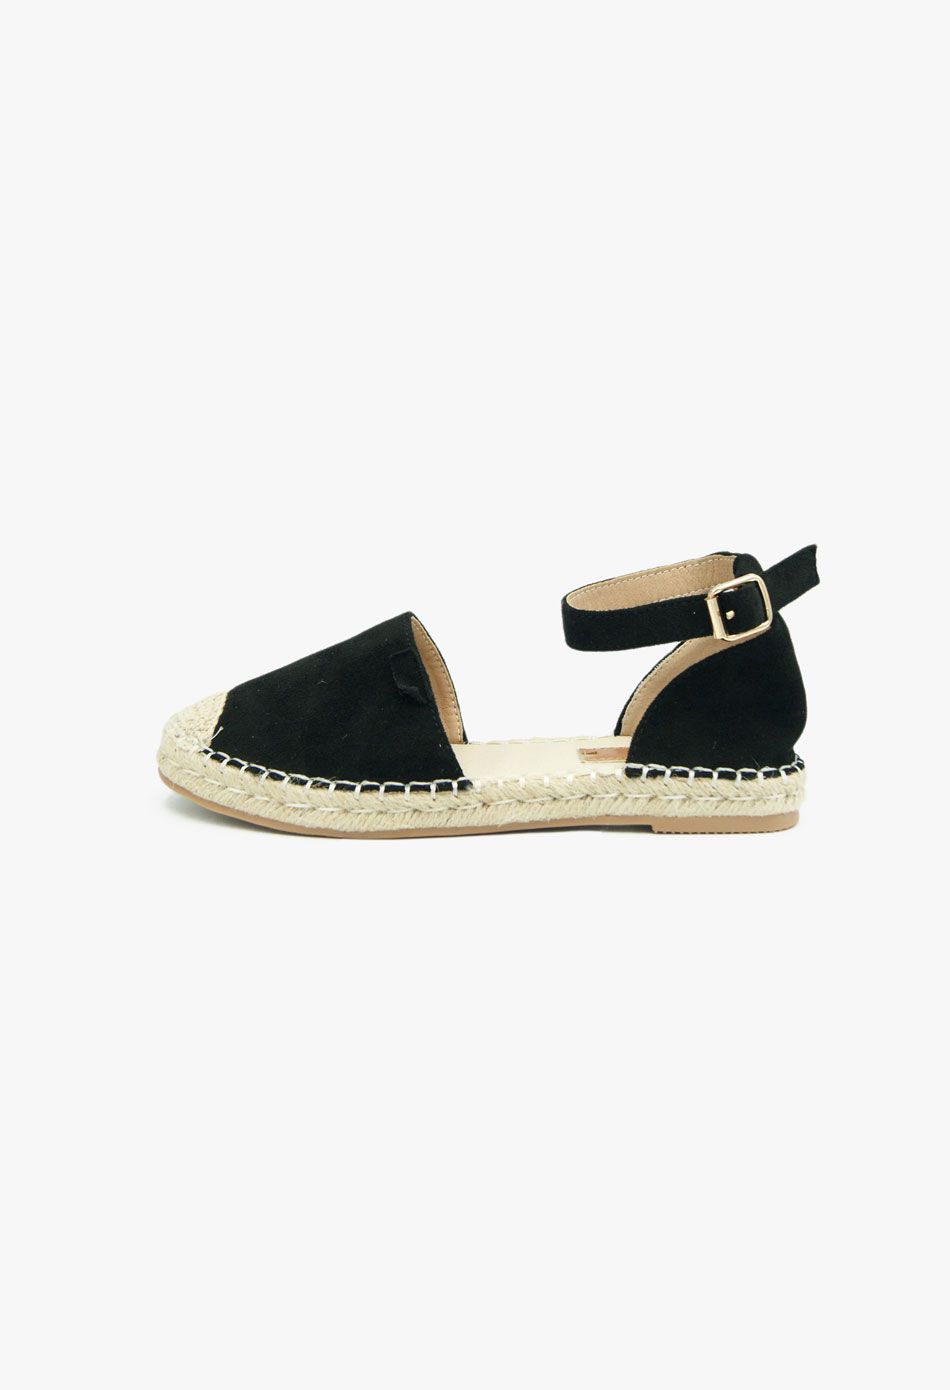 Πλατφόρμες Εσπαντρίγιες Open Heel Μαύρο / BYJX0819-black Ανοιχτά Παπούτσια joya.gr